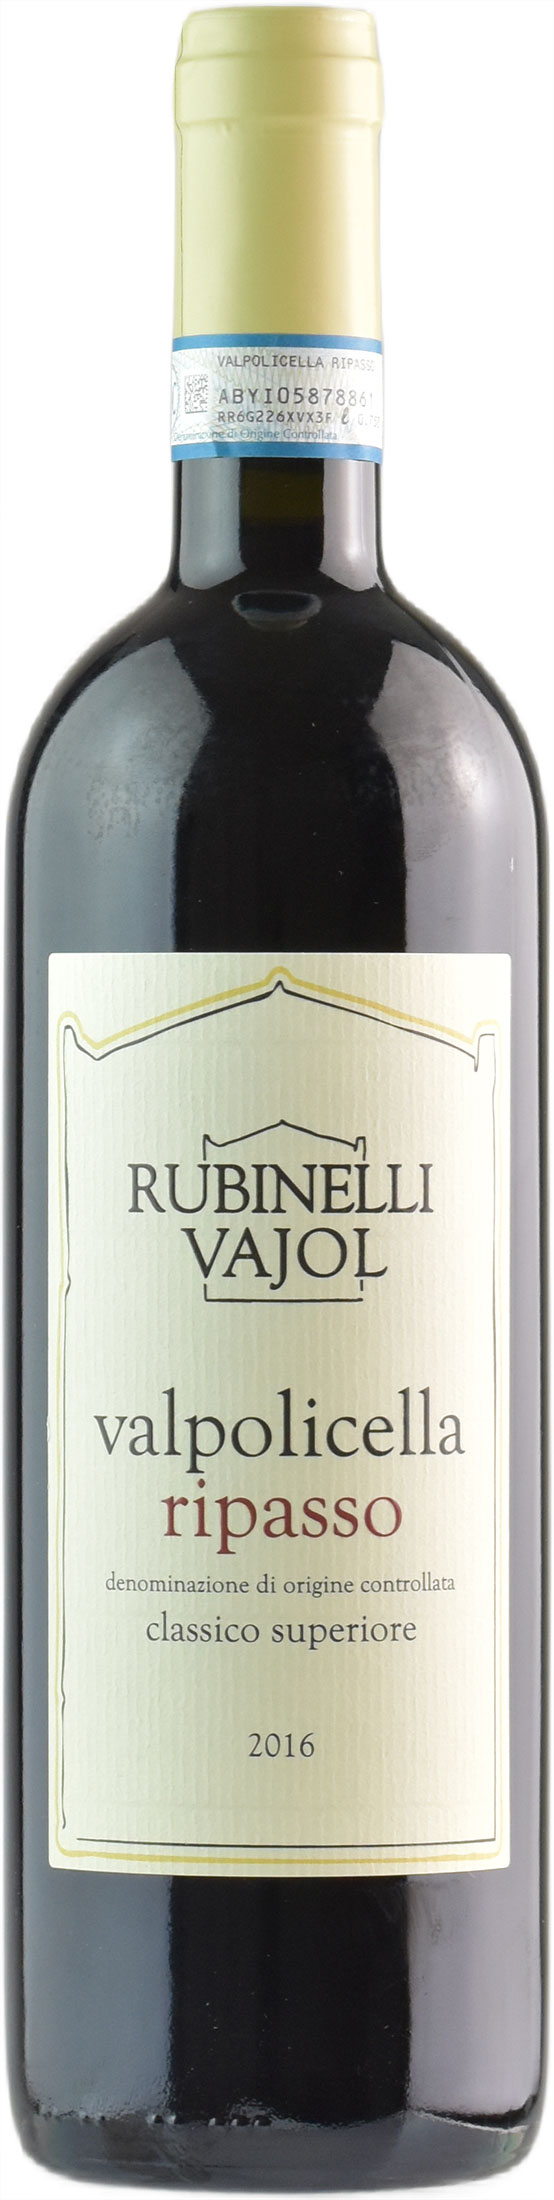 Rubinelli Valpolicella Ripasso Classico Superiore 2016